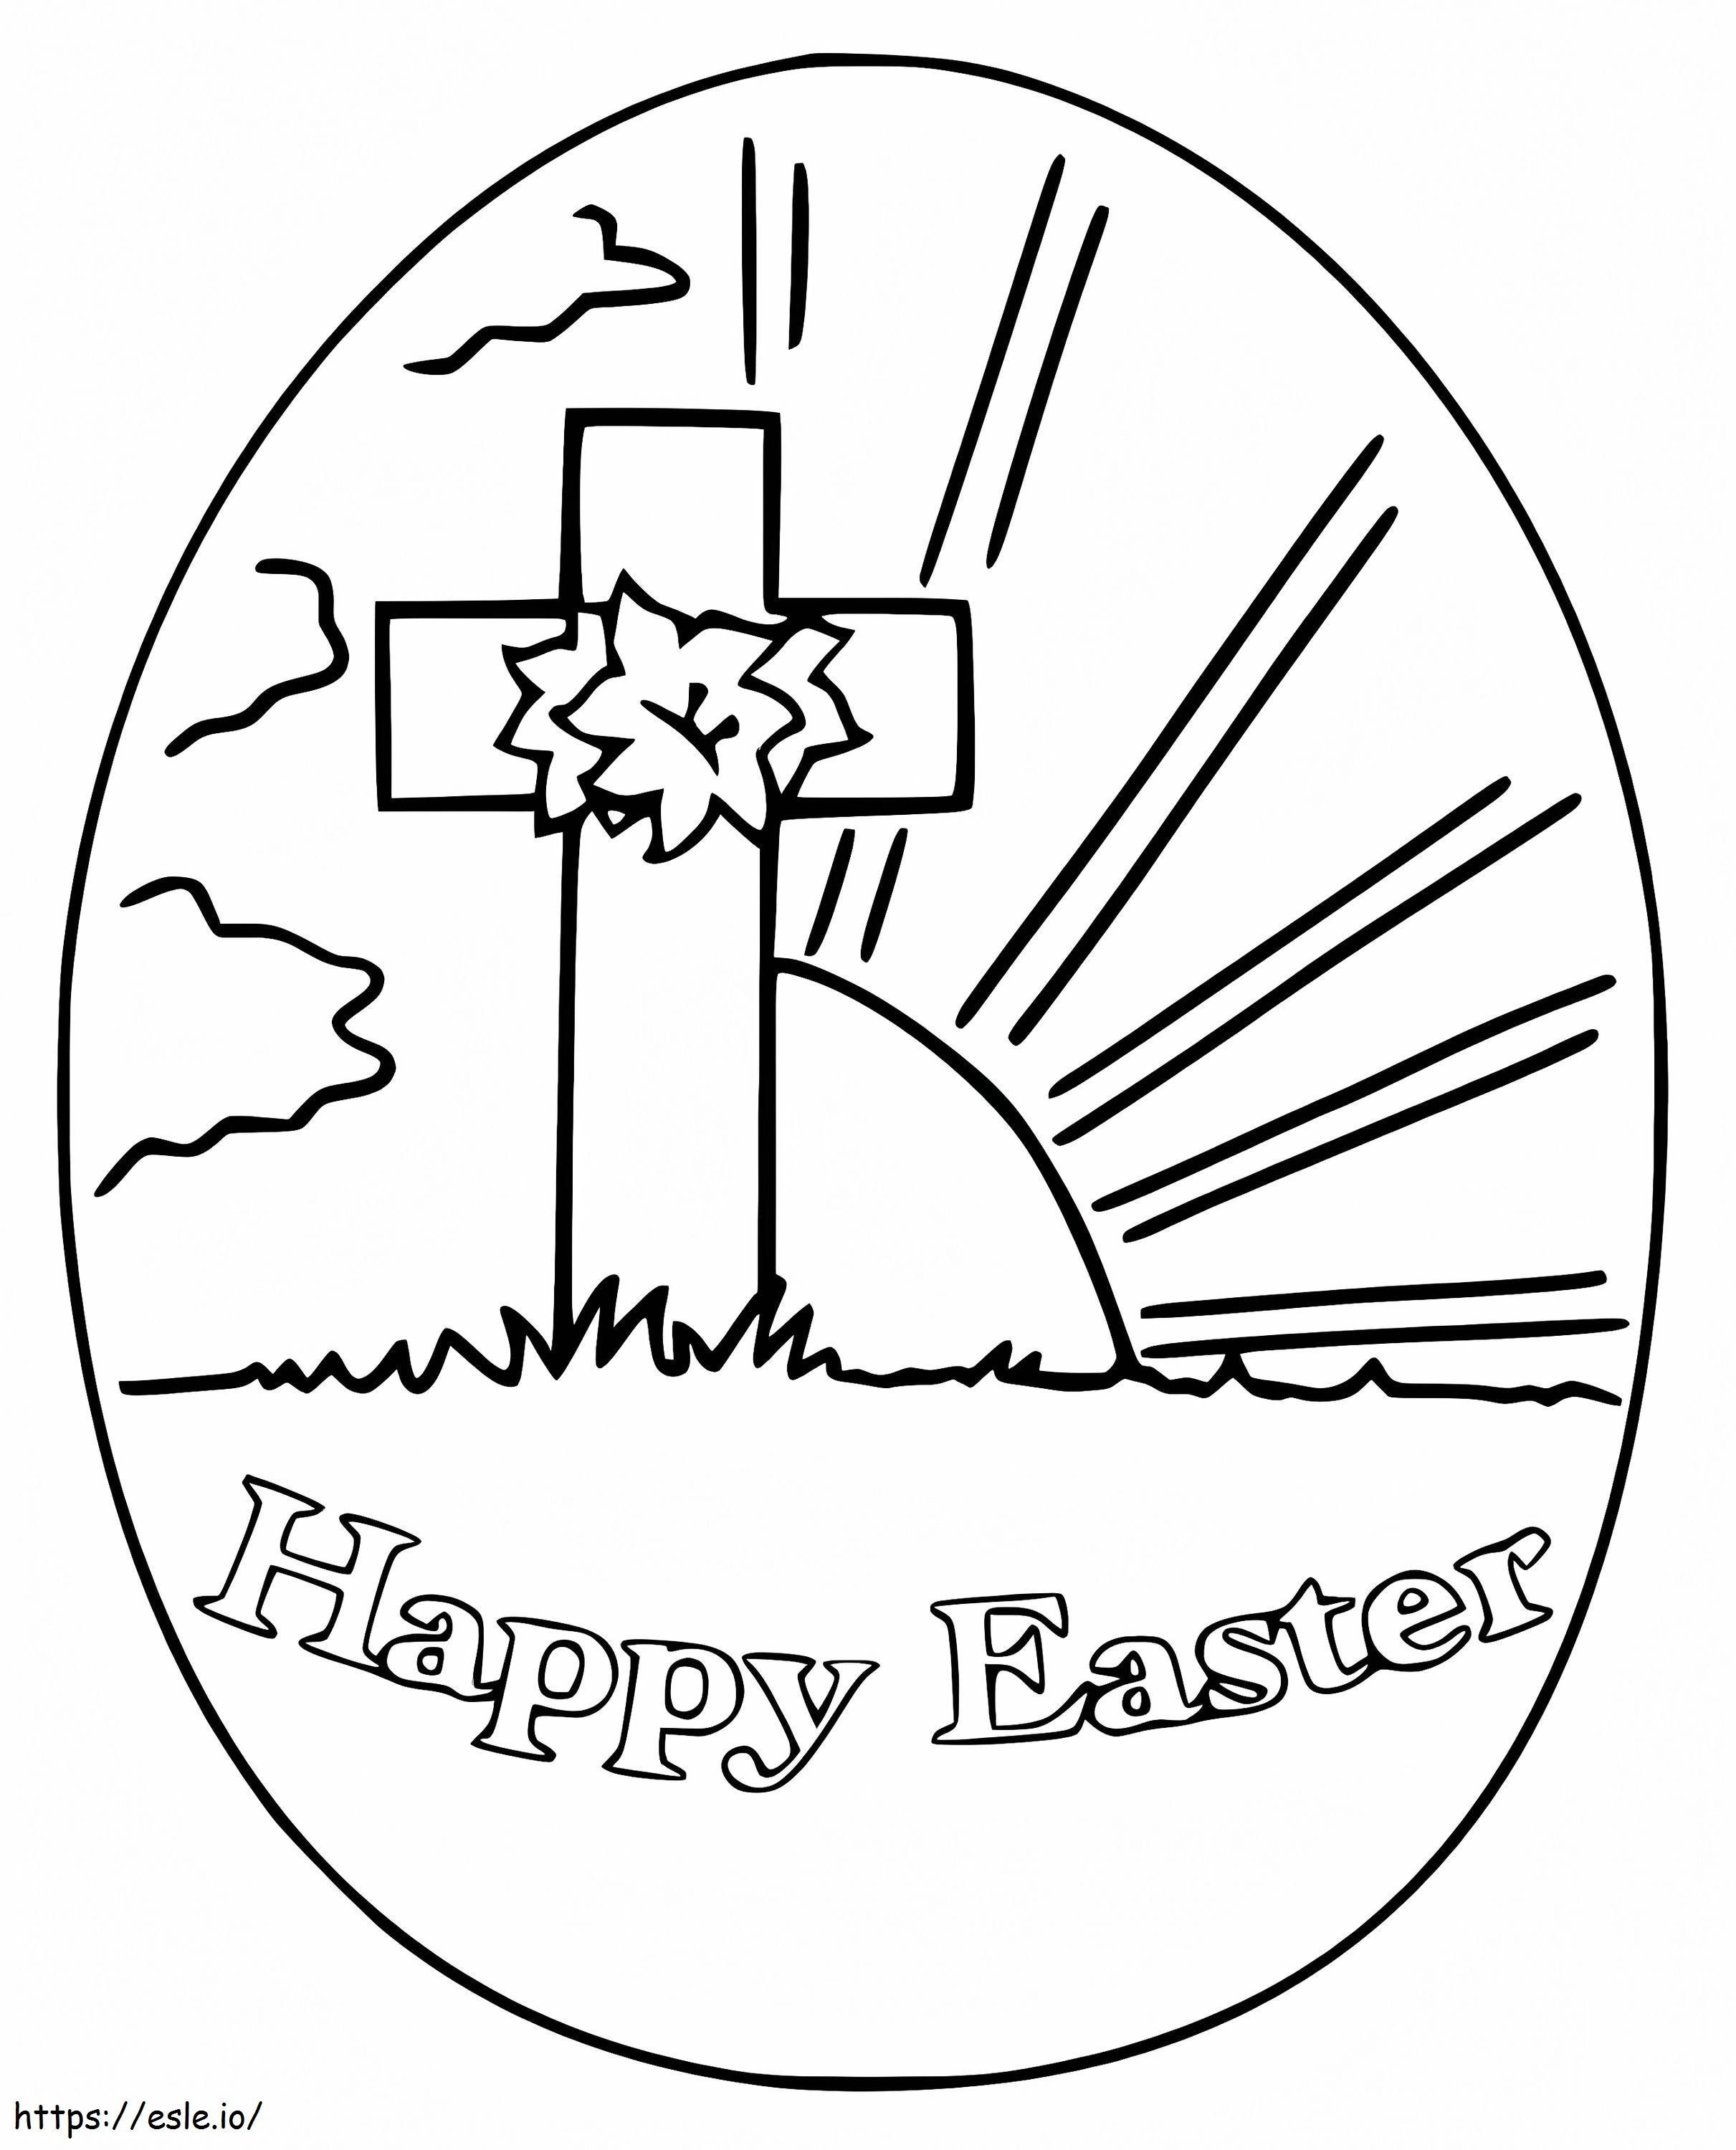 Ou de Paște cu model în cruce de colorat